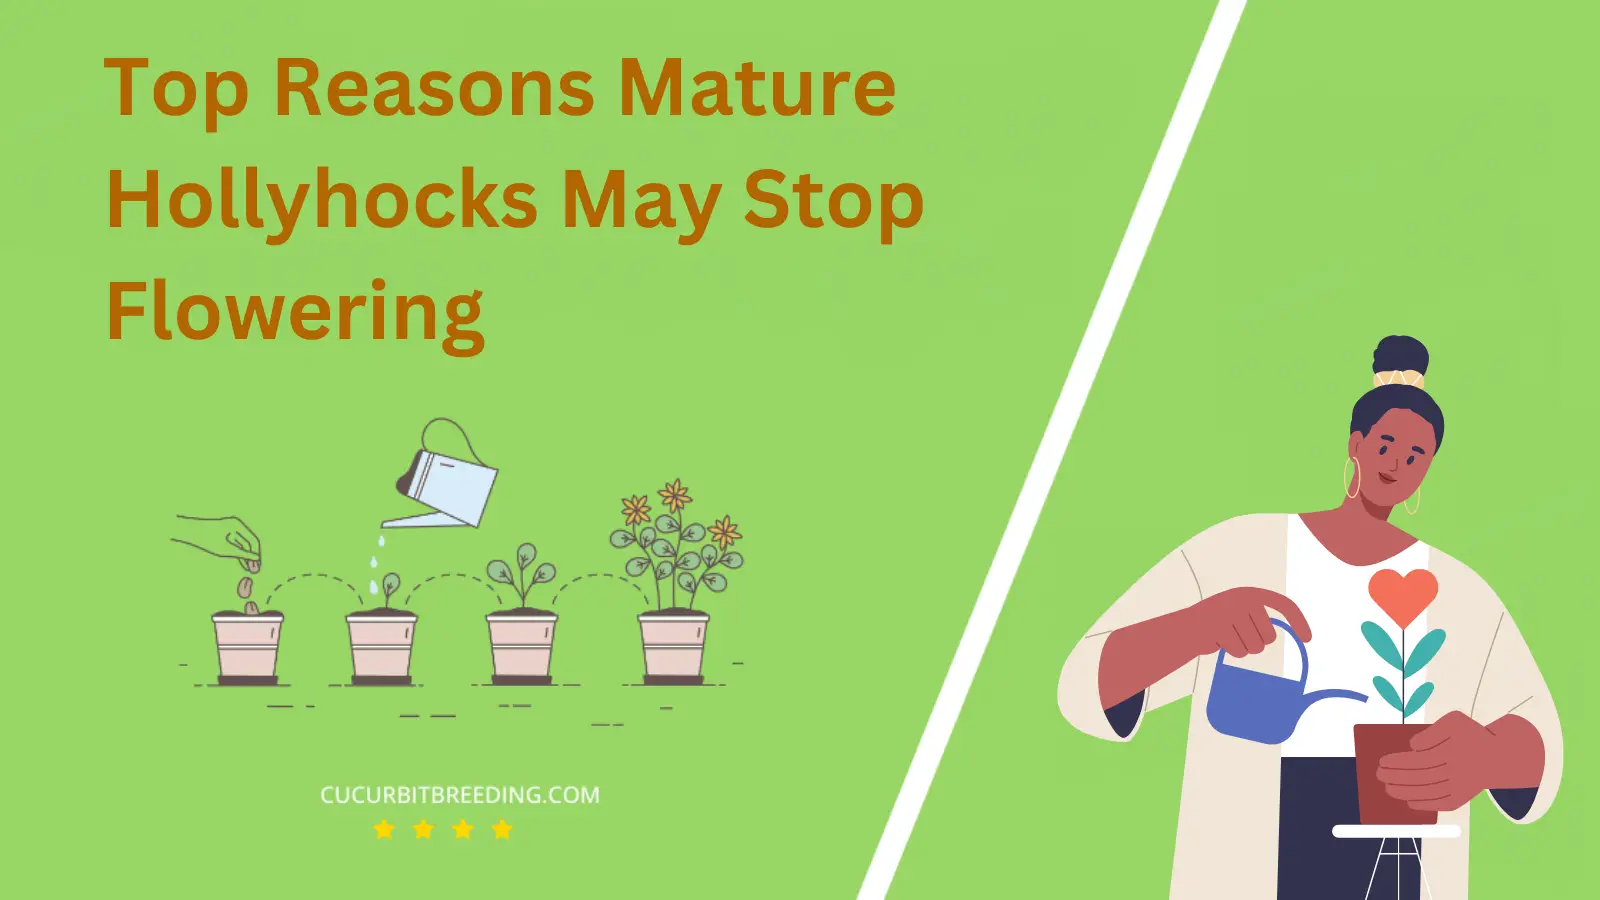 Top Reasons Mature Hollyhocks May Stop Flowering